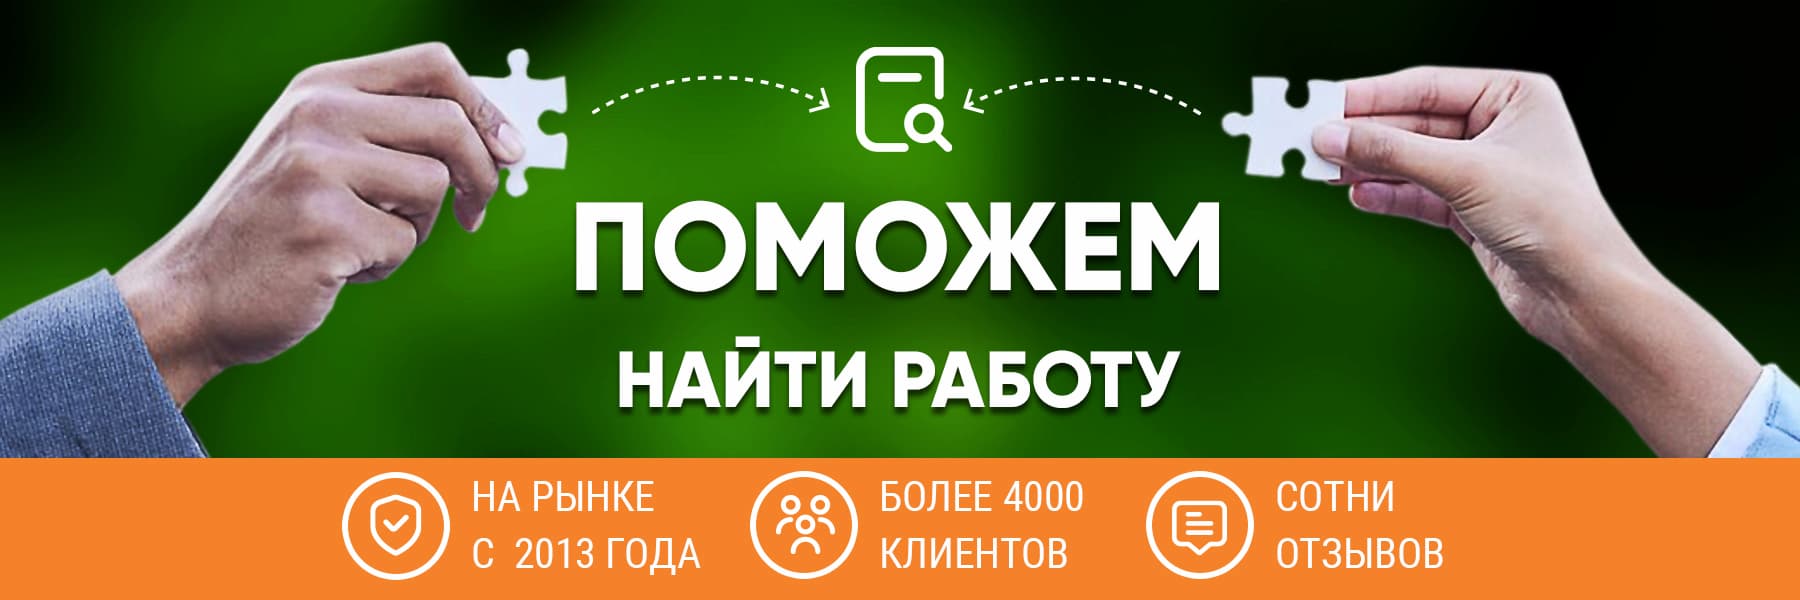 Сайты по поиску работы в России и 9 сайтов по поиску сотрудников из разных сфер